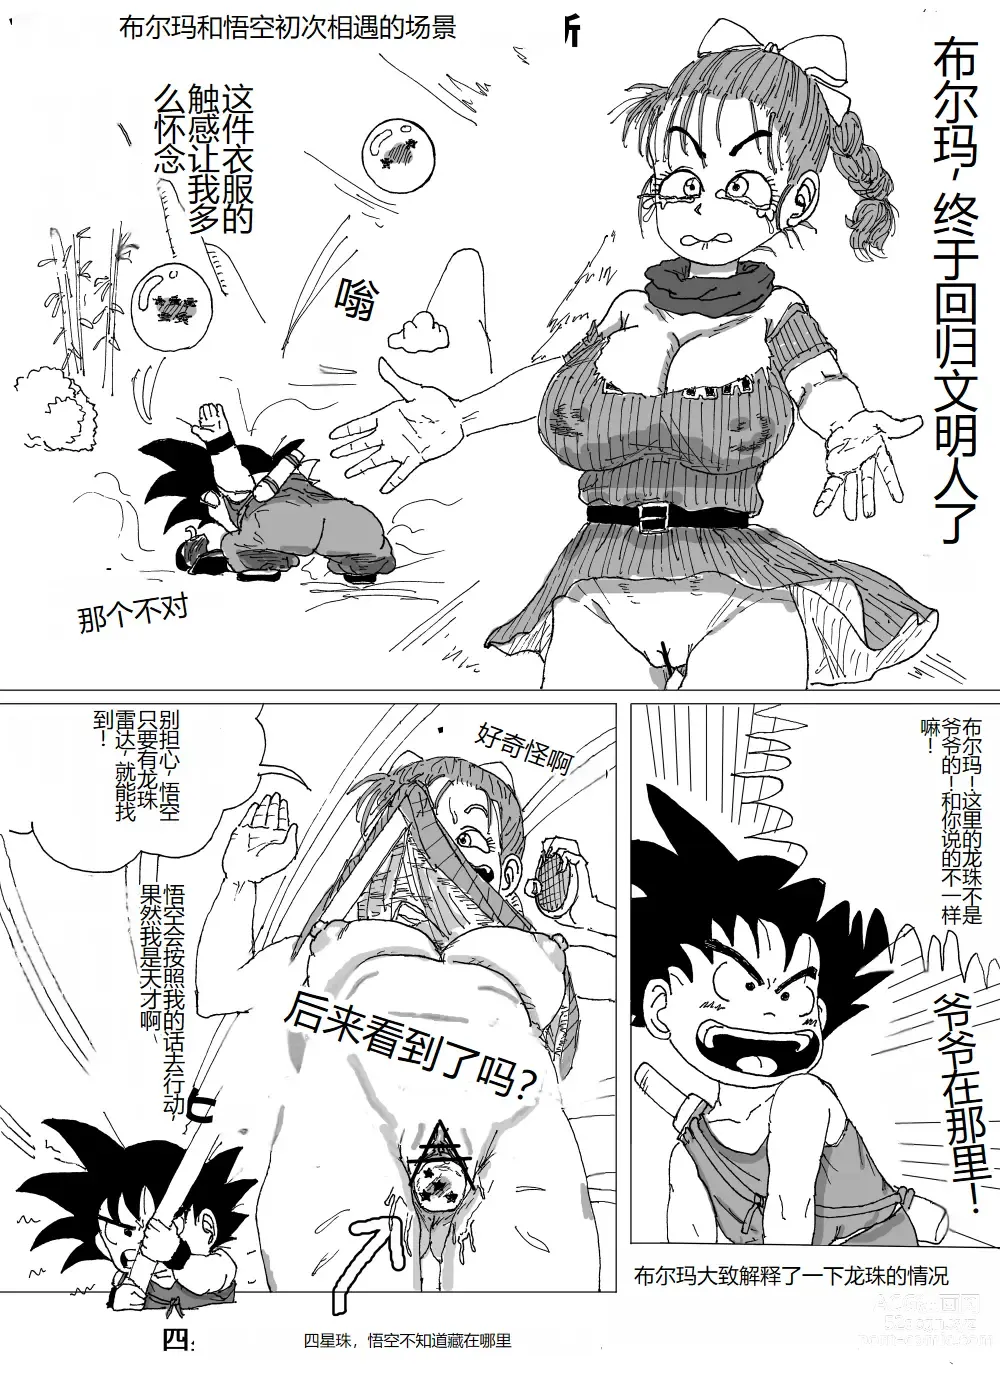 Page 7 of doujinshi Bulmas Suffering